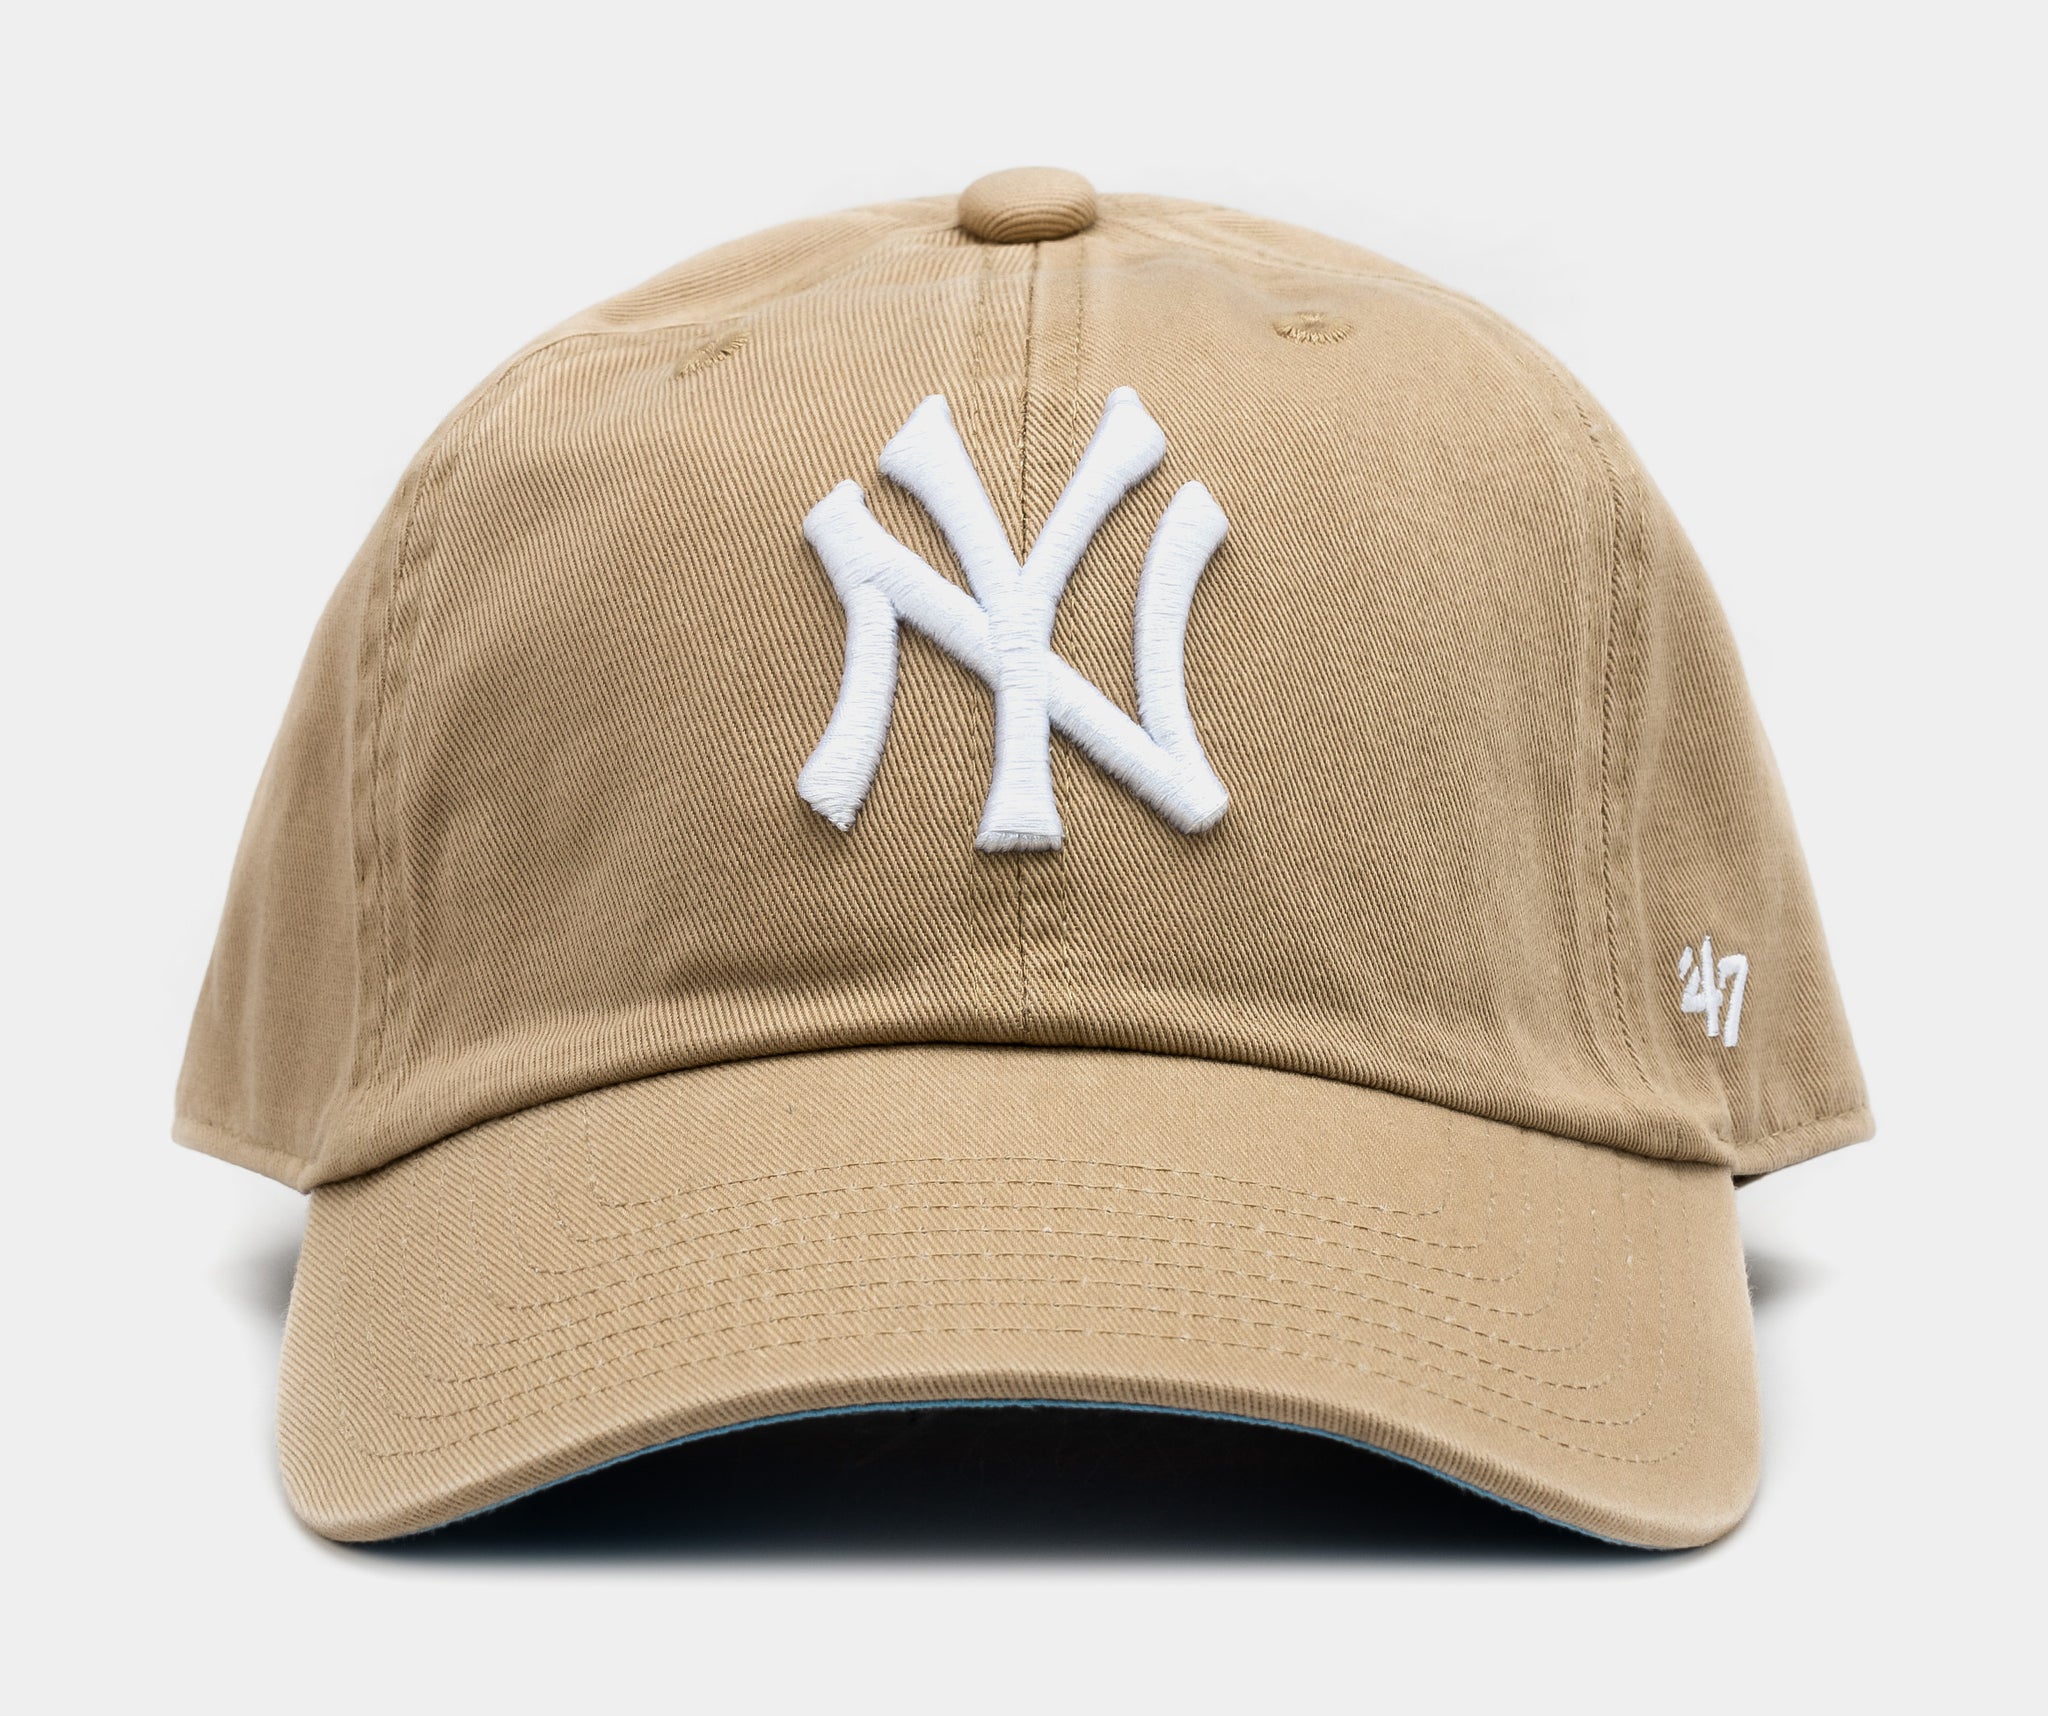 47 yankees hat